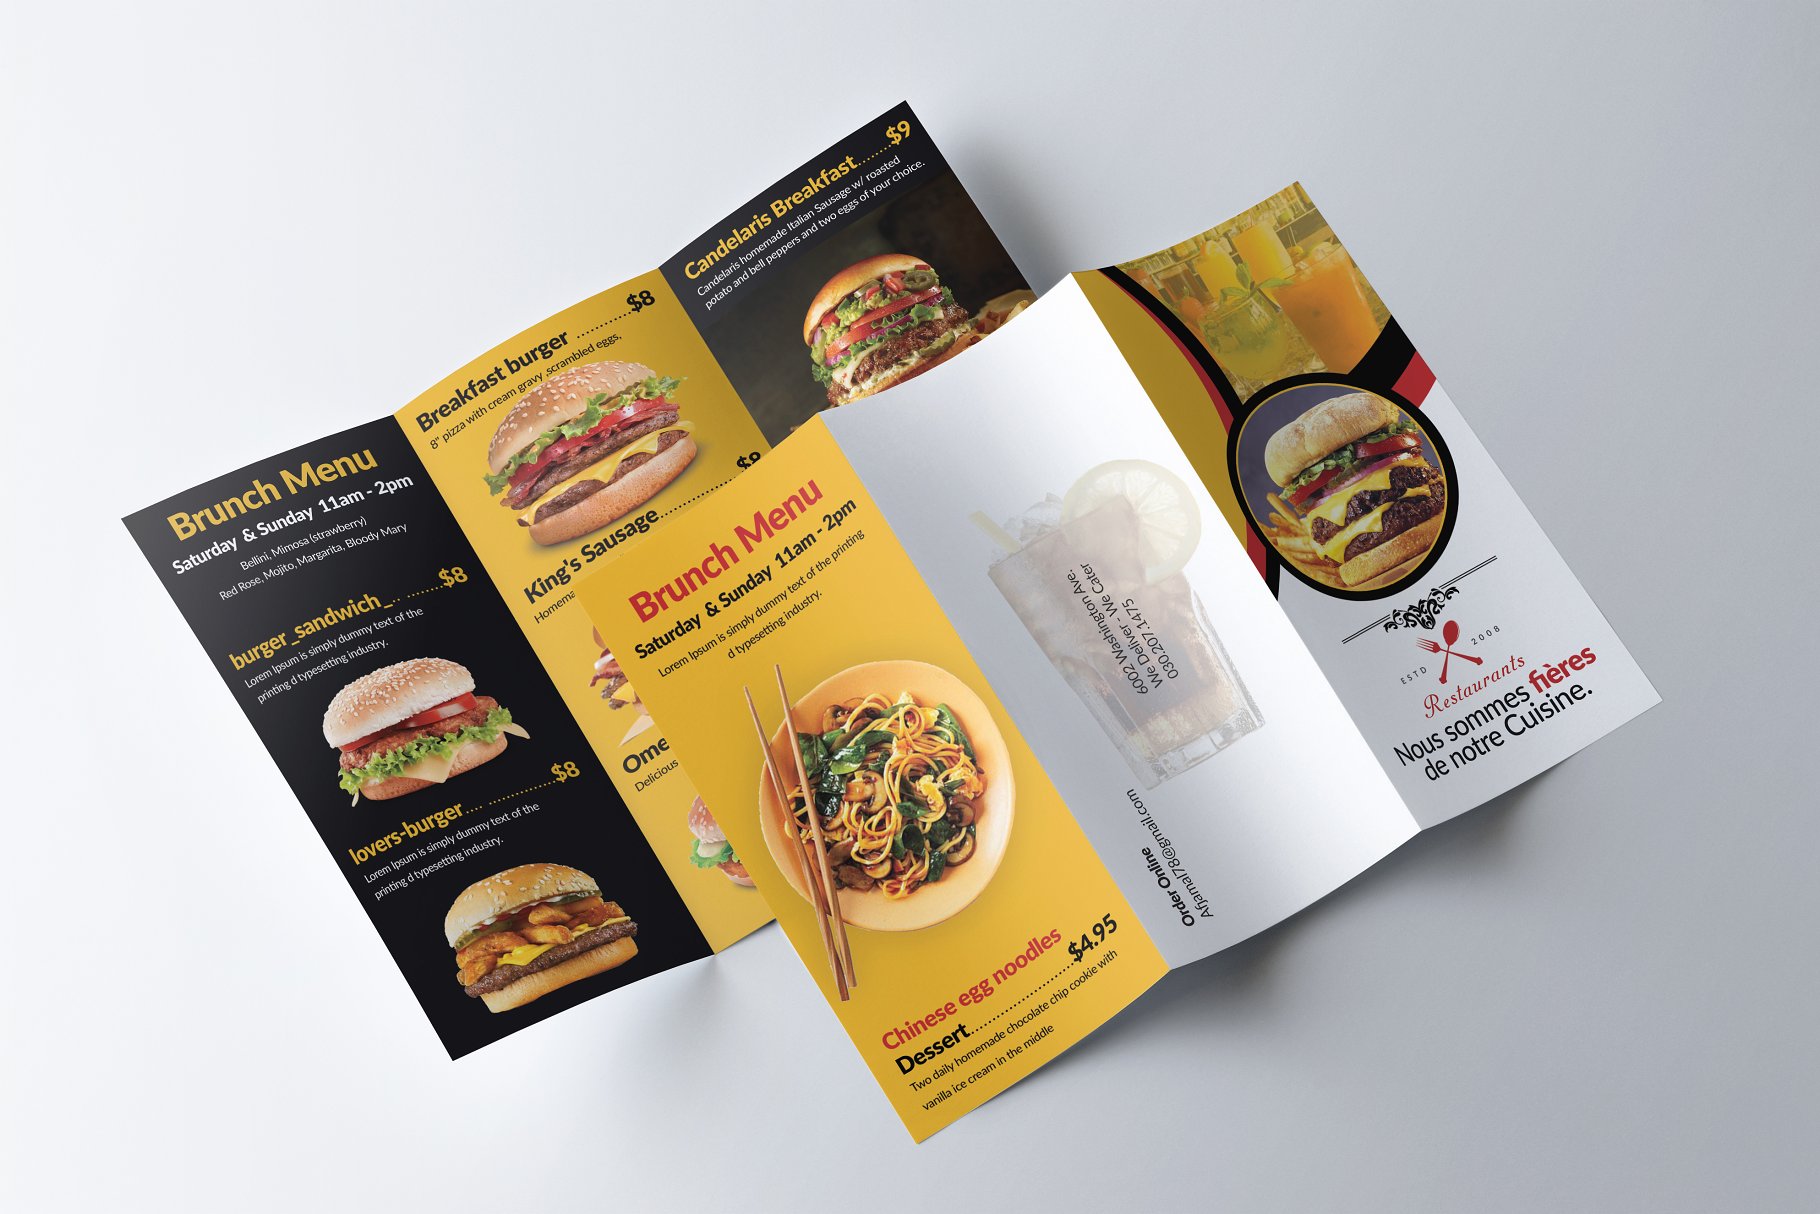 面包店西式快餐折页广告传单模板 Healthy Food Menu Brochure Trifold插图(3)